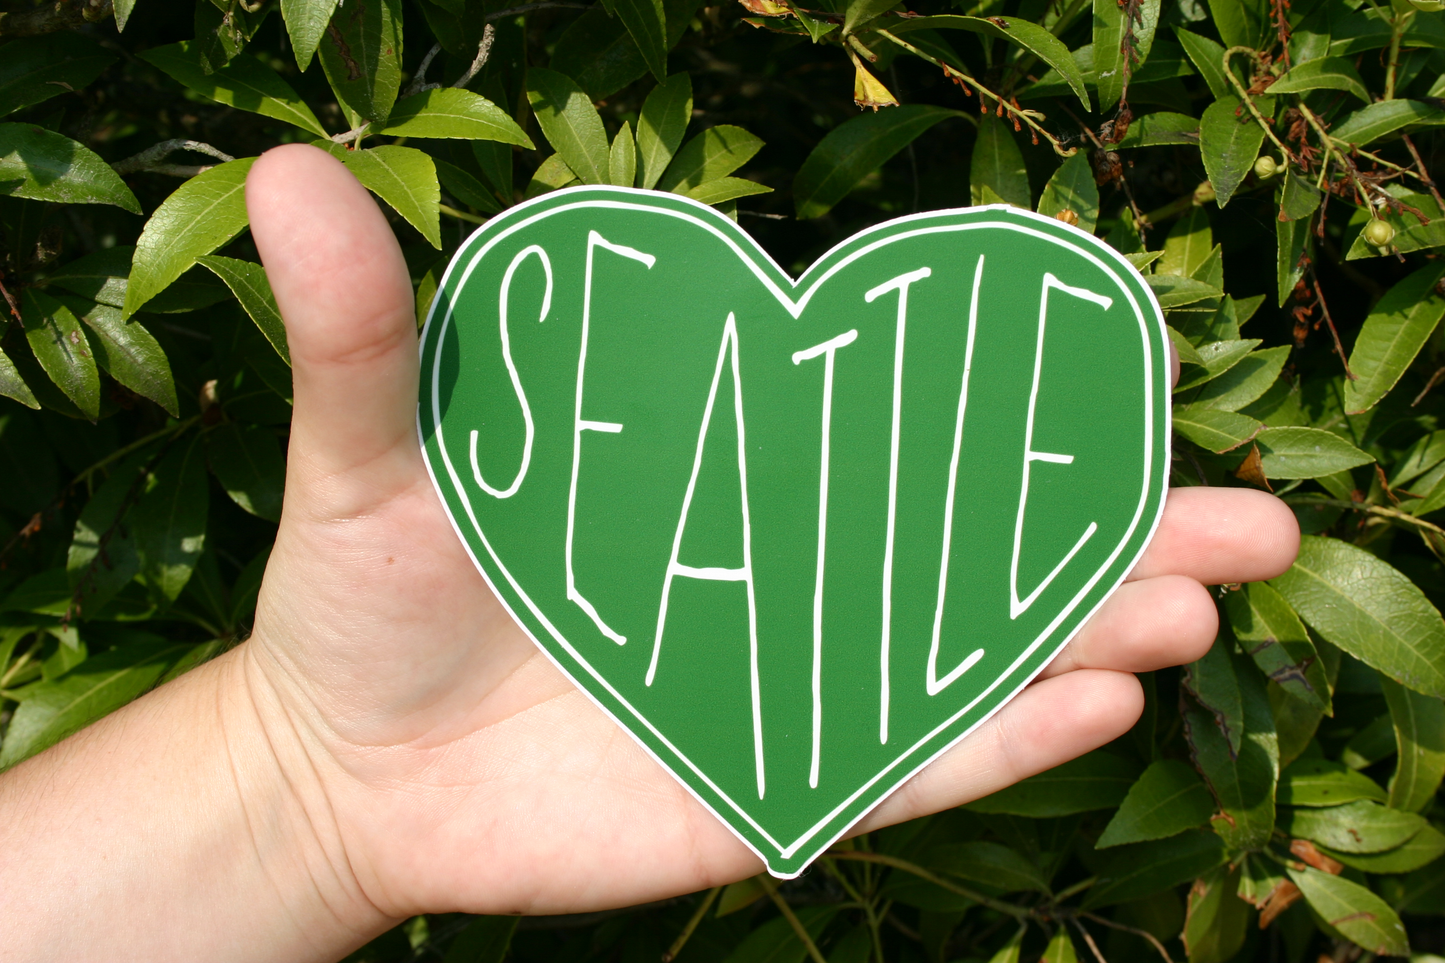 Seattle Heart